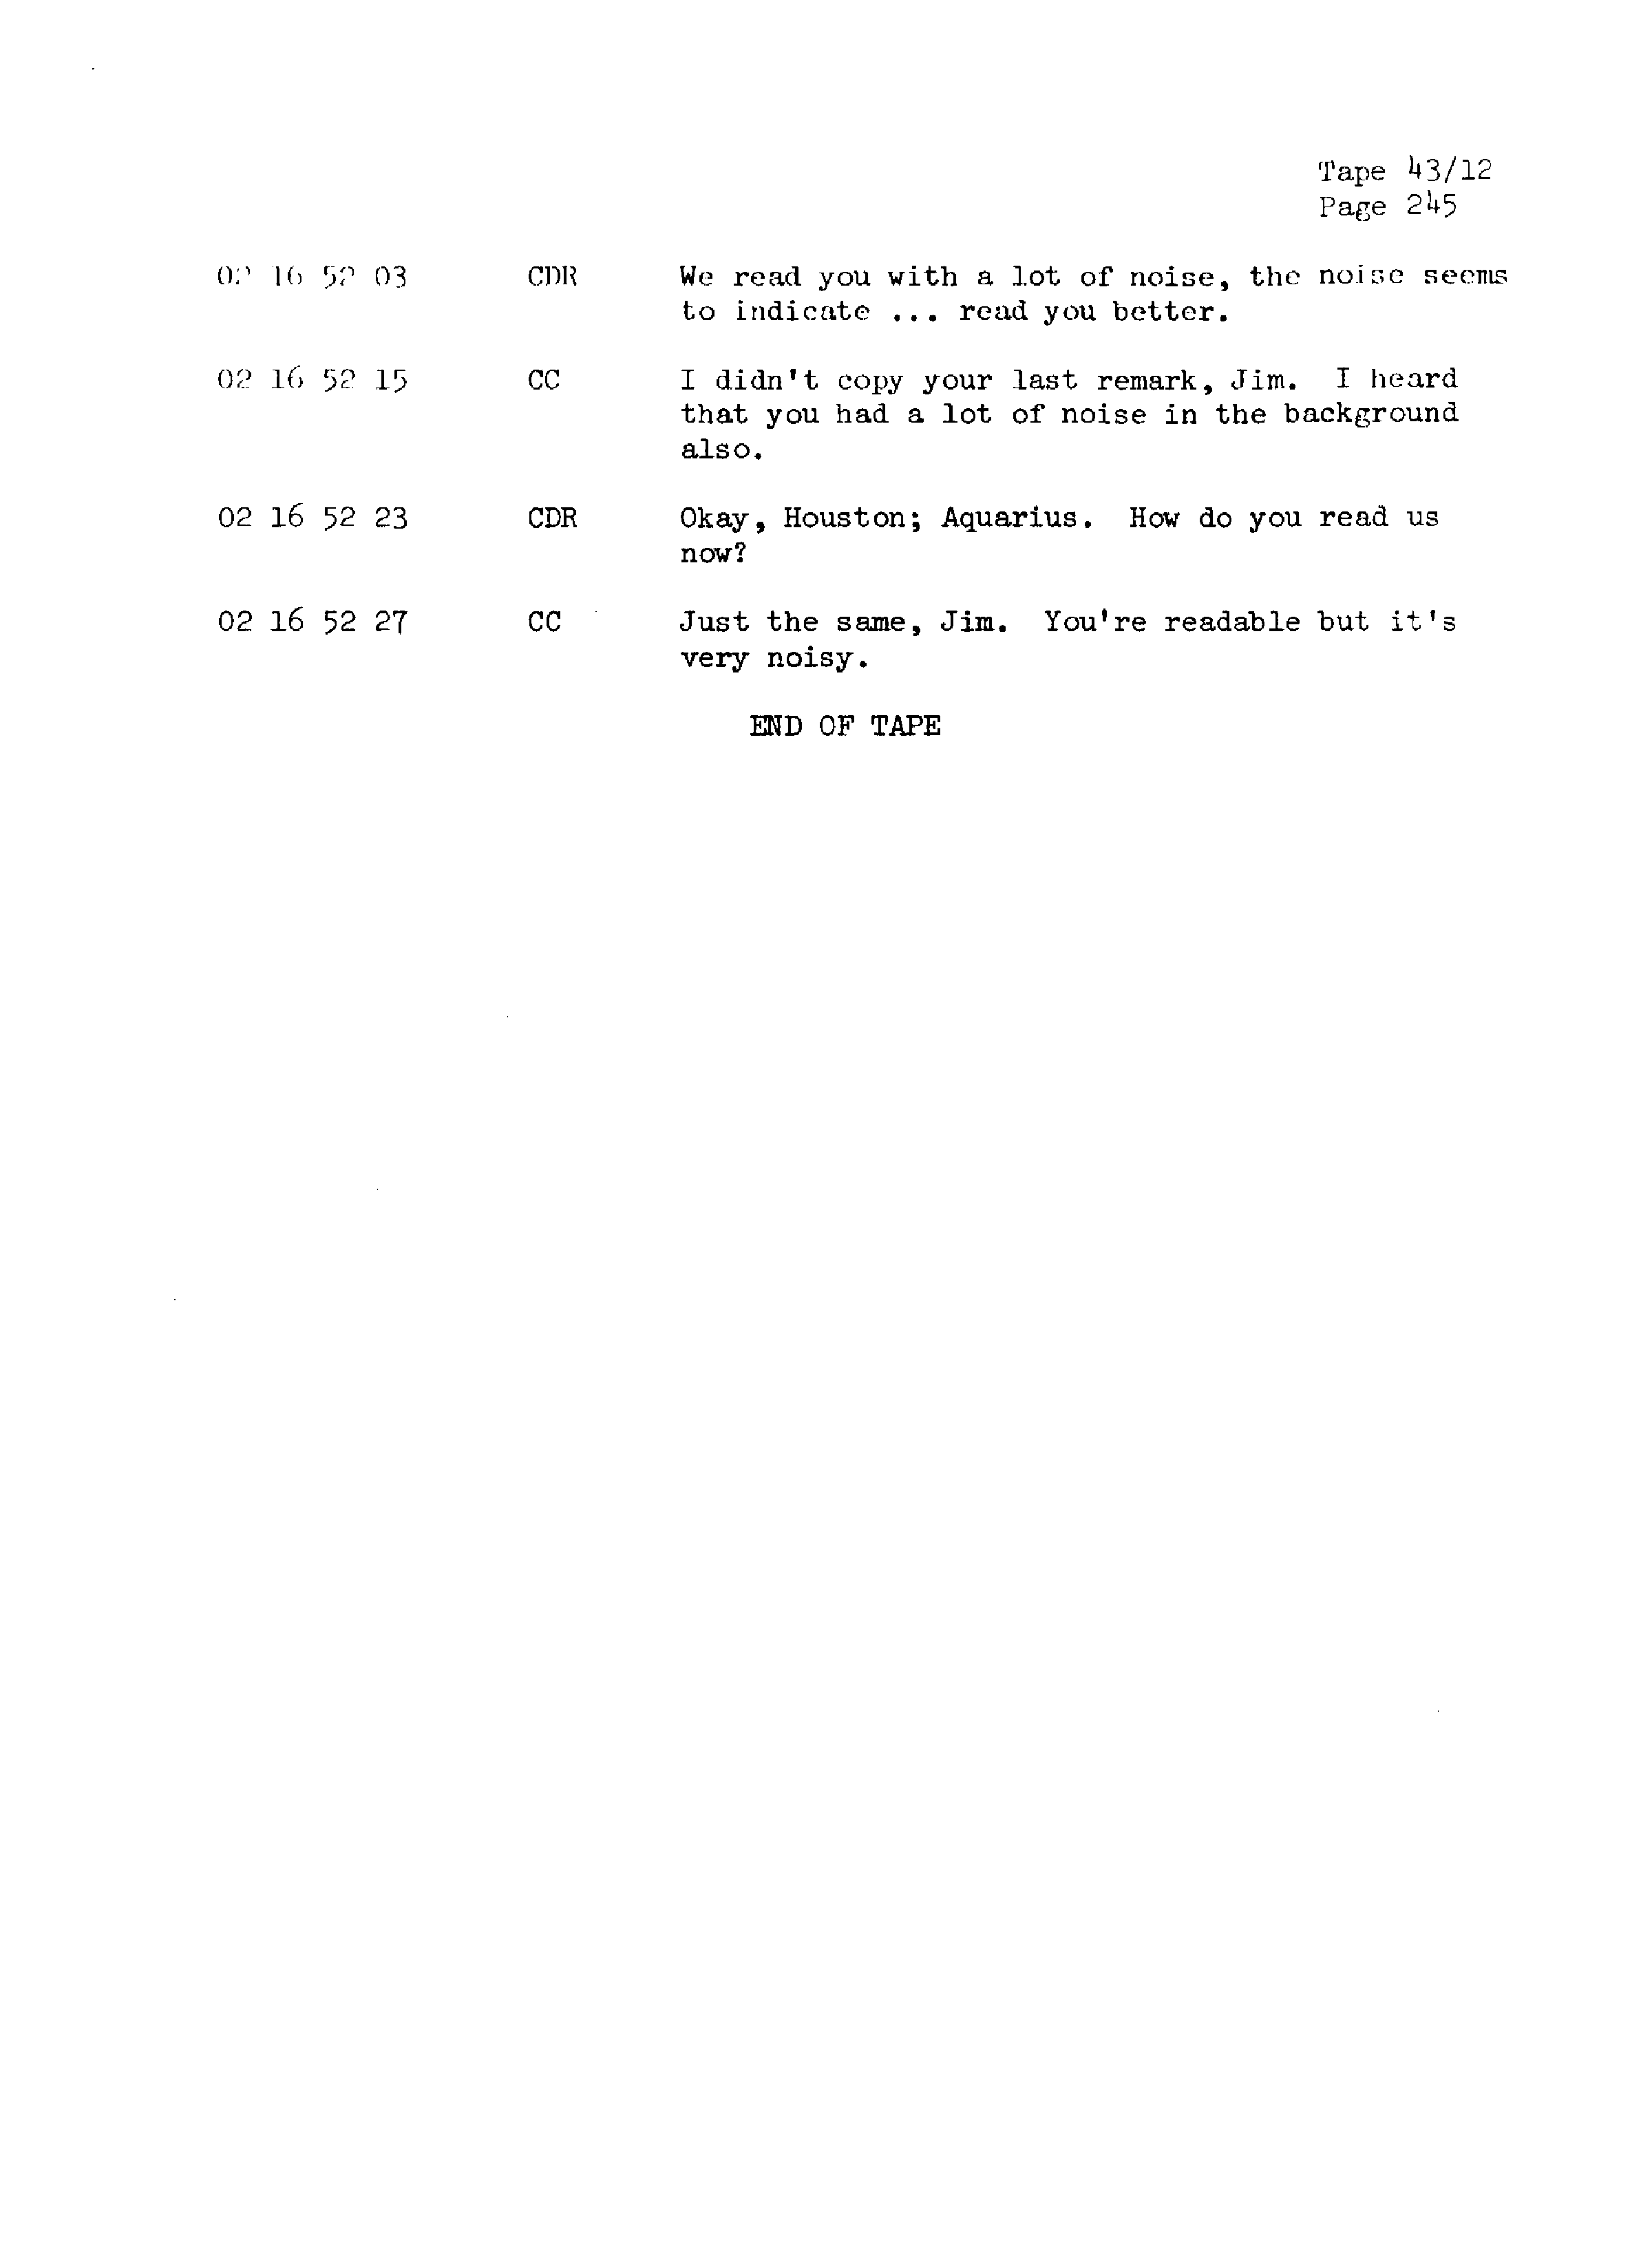 Page 252 of Apollo 13’s original transcript